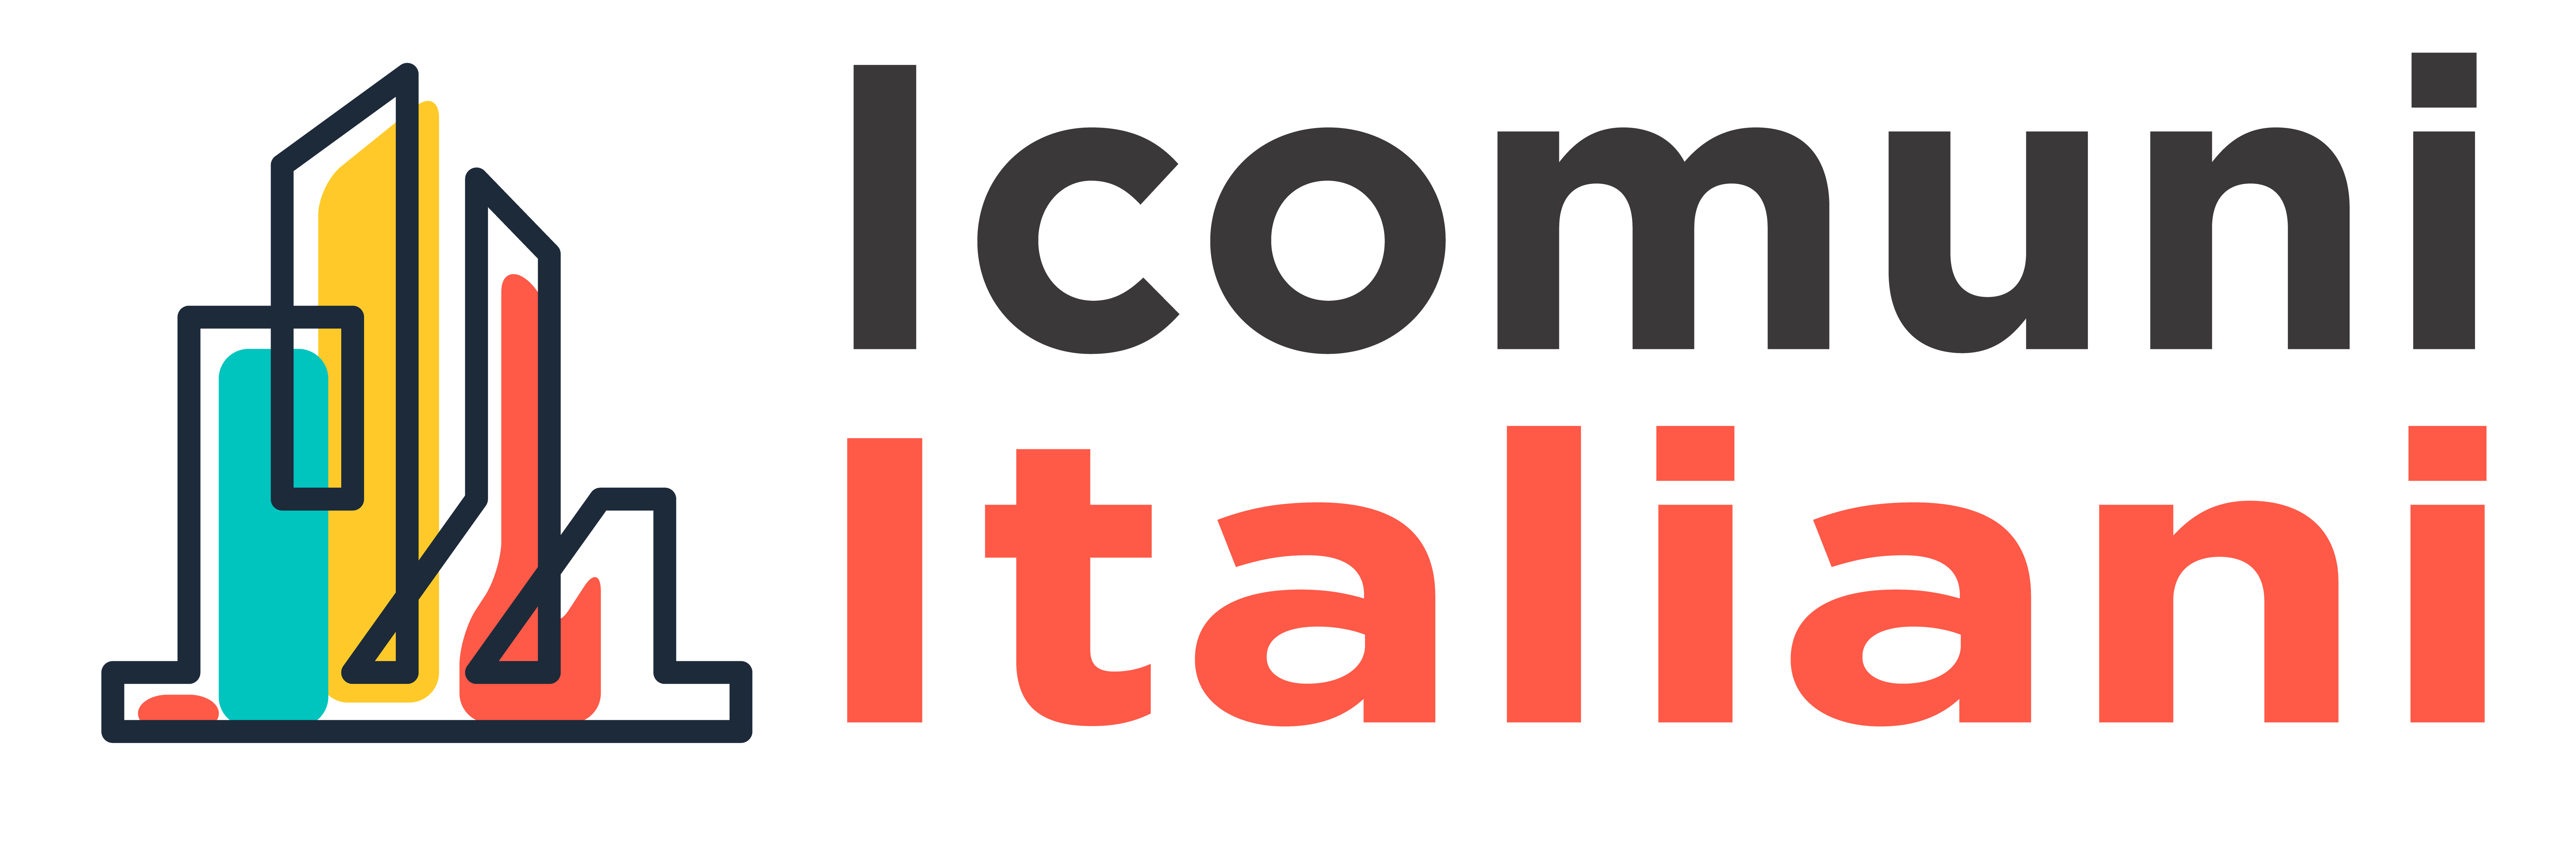 I Comuni Italiani